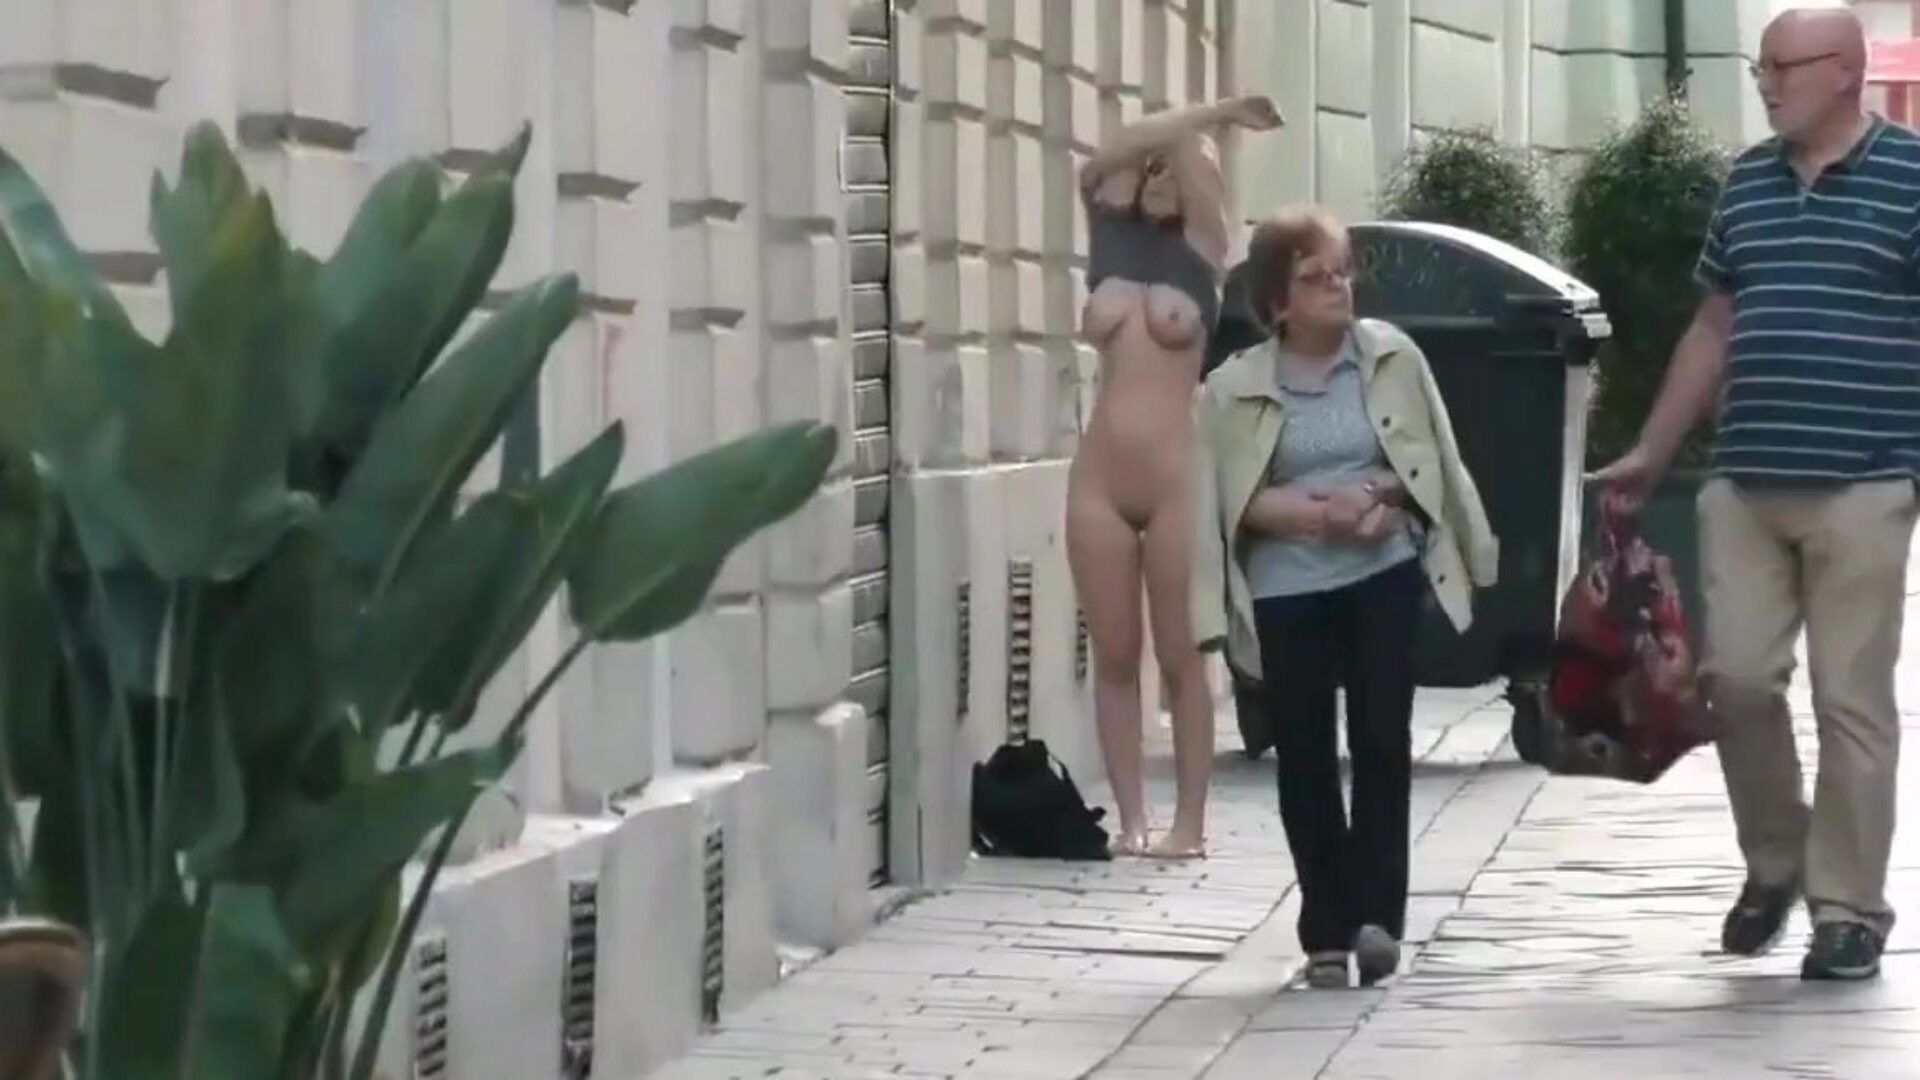 kaunis tyttö alasti julkisesti, vapaa beeg kaunis hd-porno katsella kaunis tyttö alasti julkisessa videoleikkeessä xhamsterissa, kuumin hd-fuck-fest -putkisivusto, jossa on paljon ilmaisia ​​beeg kauniita ja xxx-julkisia porno videoita